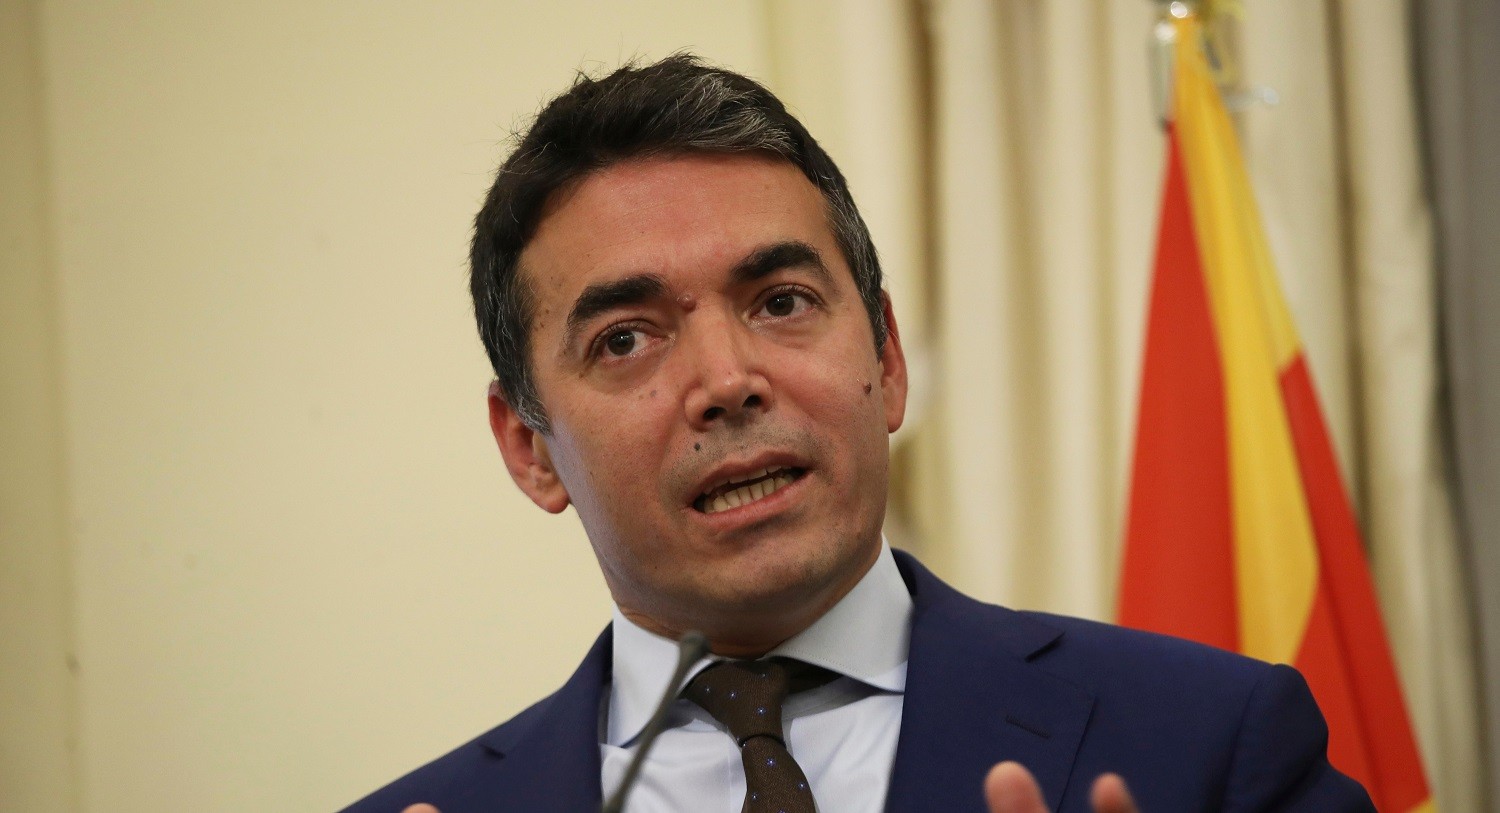 Ντιμιτρόφ: Πήρε διαβεβαιώσεις για την προσήλωση της ελληνικής κυβέρνησης στη Συμφωνία των Πρεσπών